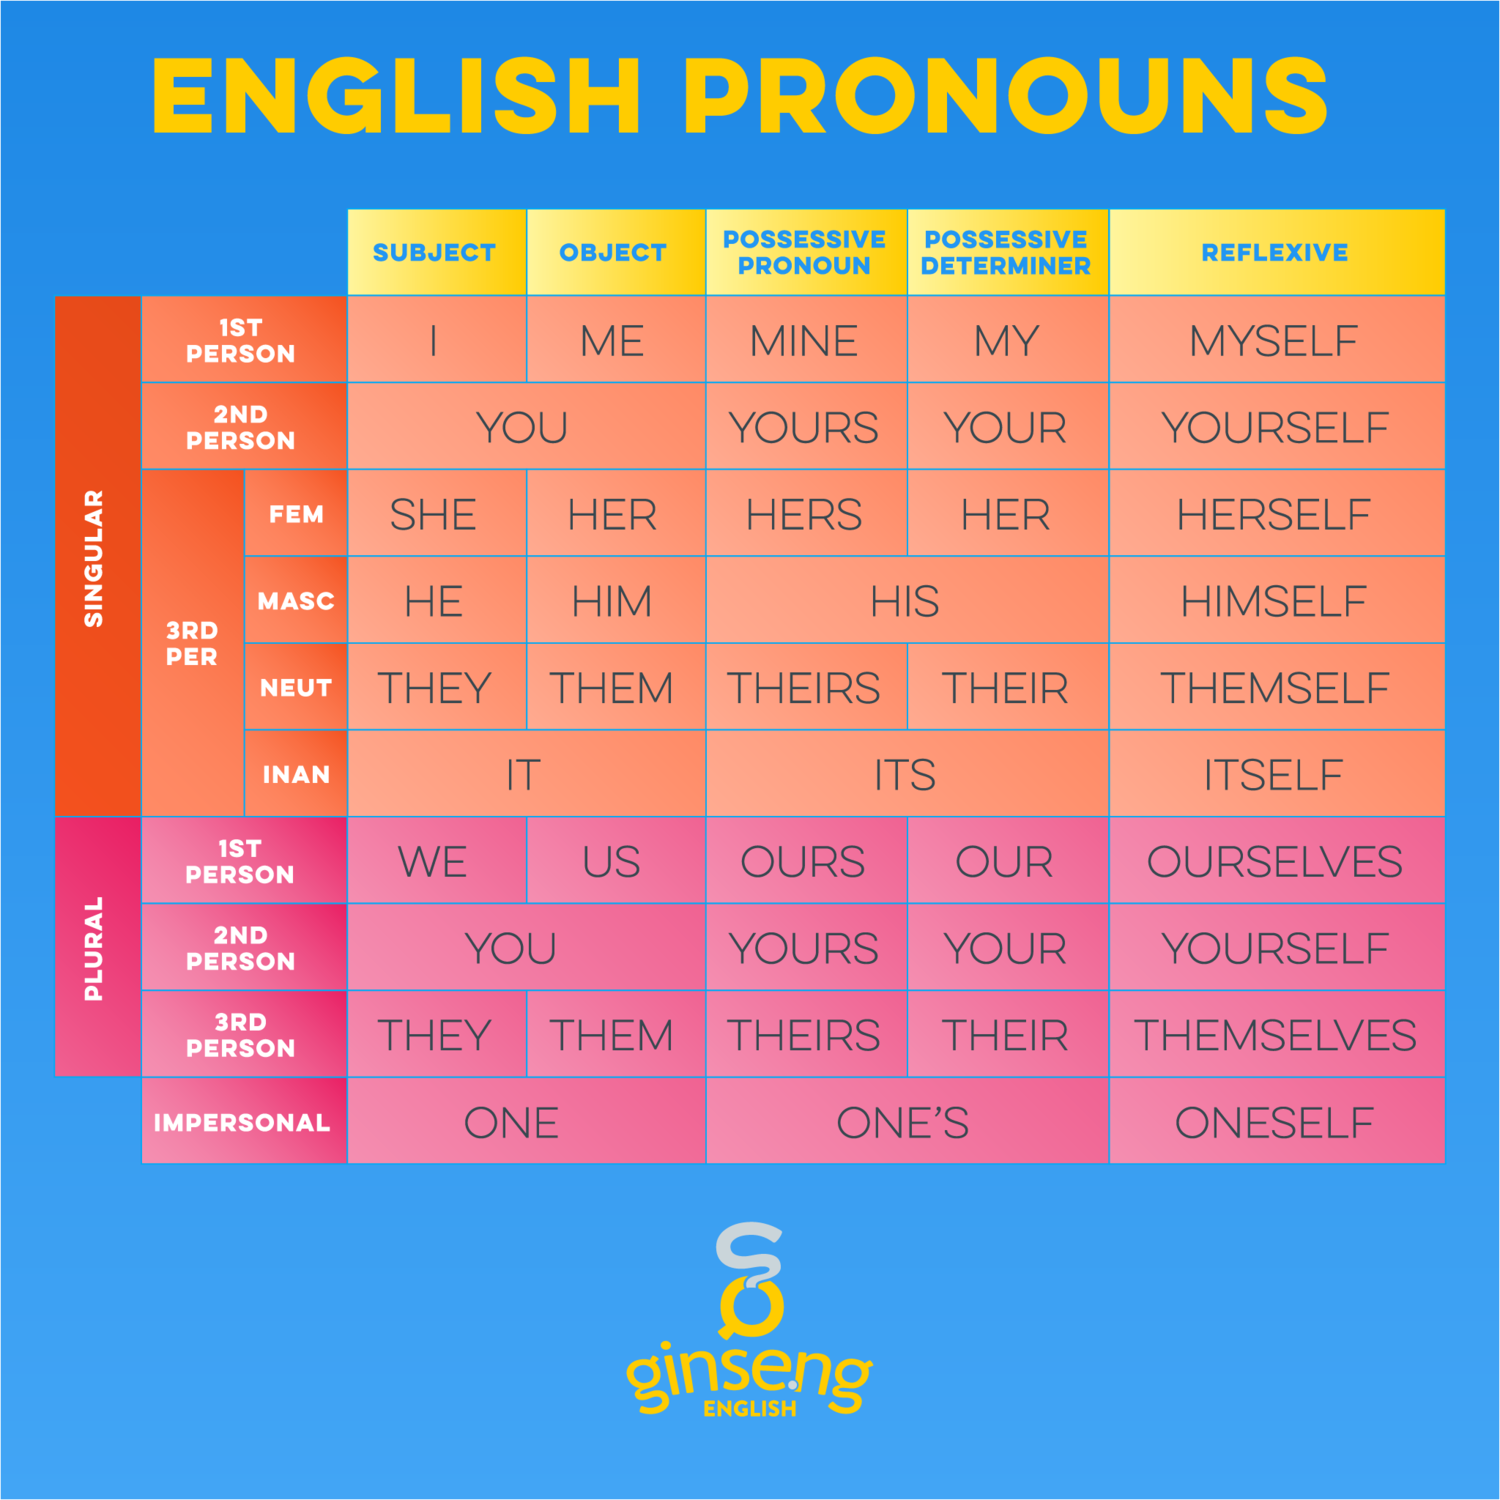 english-pronouns-ginseng-english-learn-english